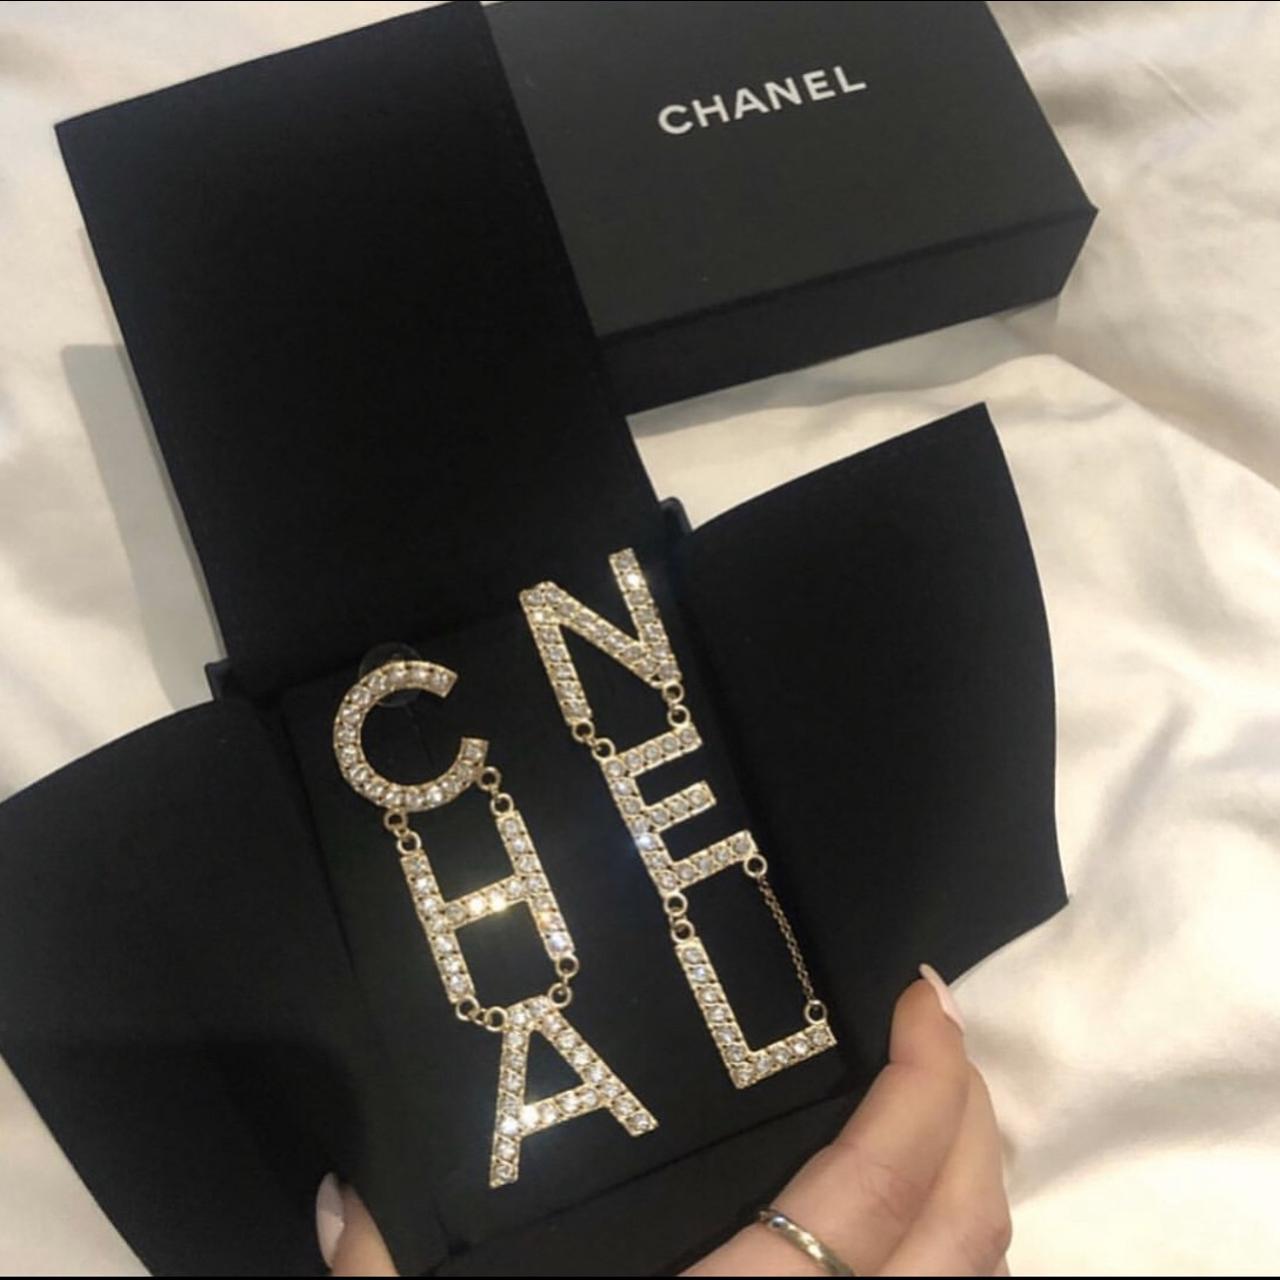 Cha nel earrings. Authentic 2019 Chanel runway - Depop